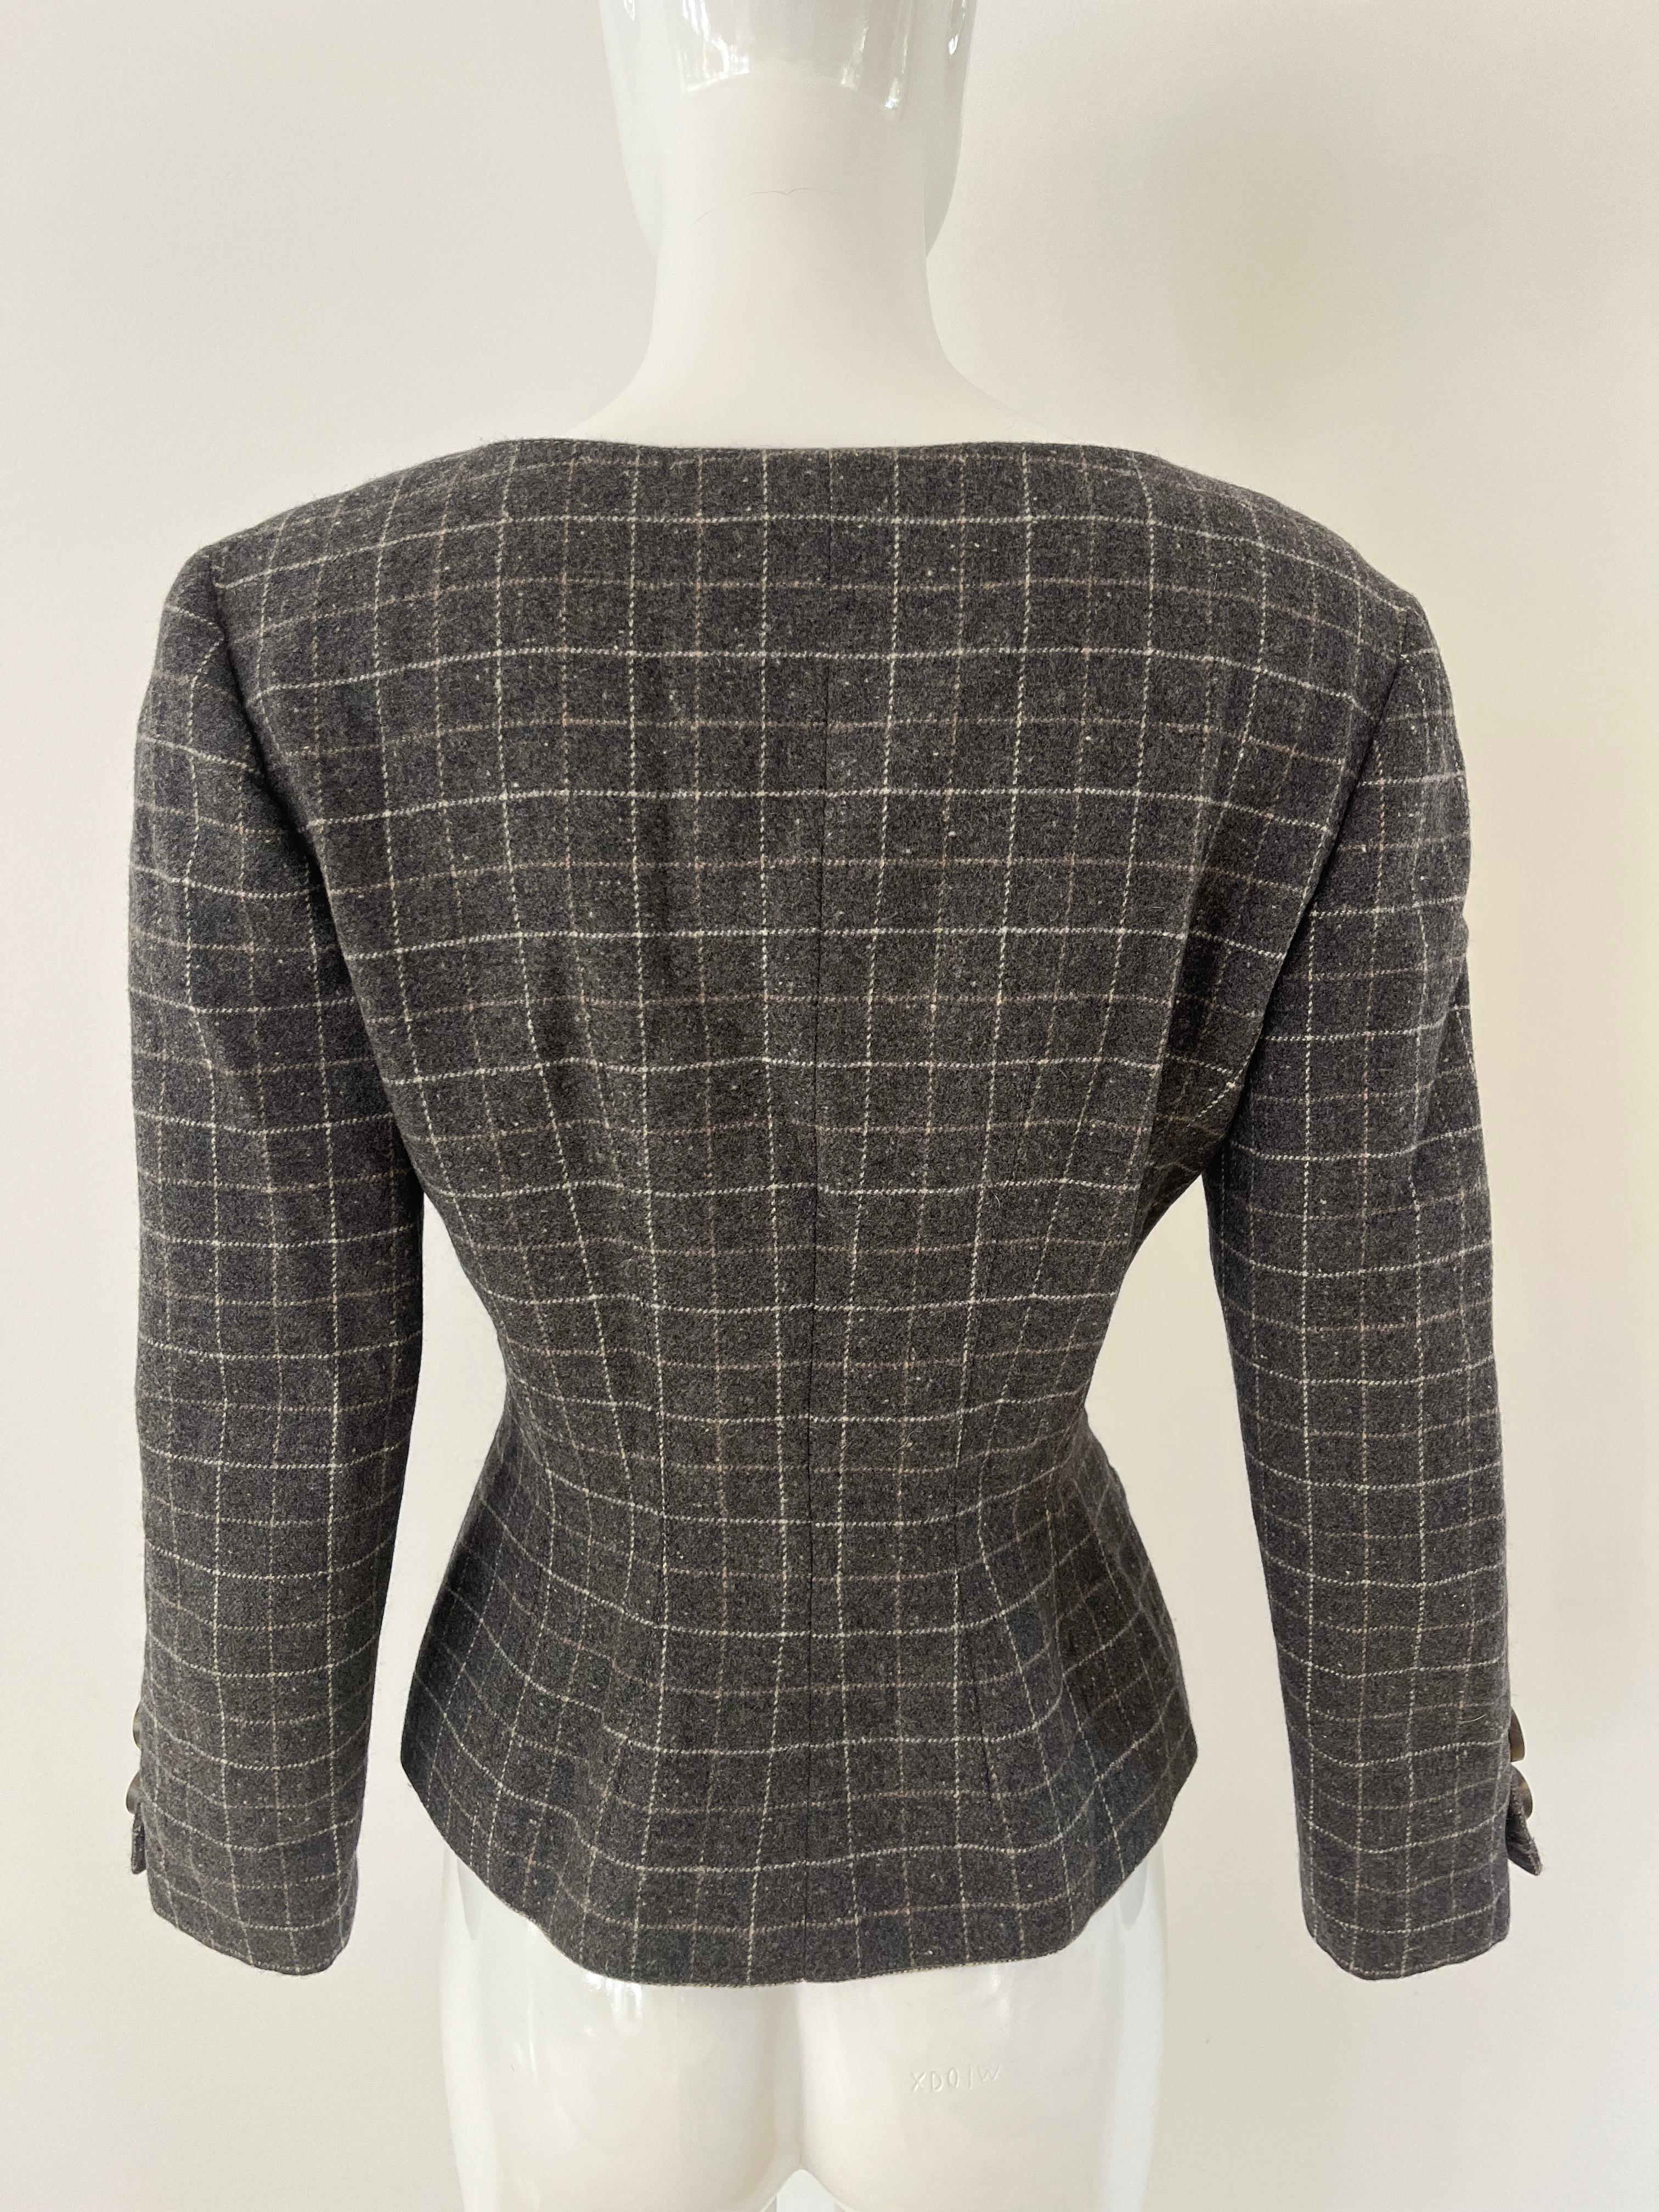 Veste V Studio de Valentino des années 1980 en laine douce mouchetée grise avec des motifs à carreaux dans un tissage blanc et beige. Boutons en forme de tourbillon et silhouette ajustée à la taille avec coutures de contour.  Deux poches obliques